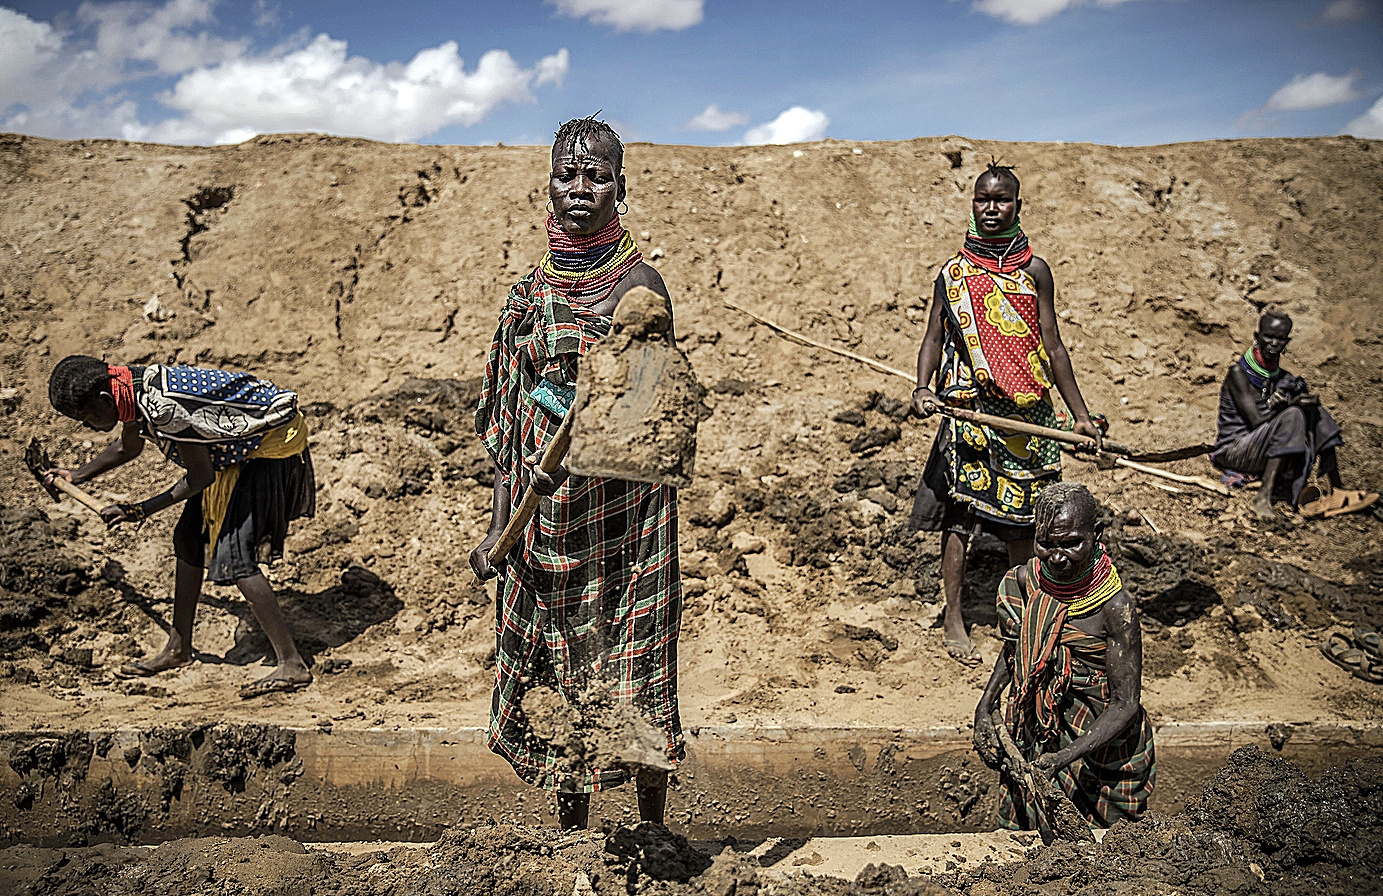 Miembros de la comunidad de Turkana reparando un canal de irrigación en la zona árida de Kenia.